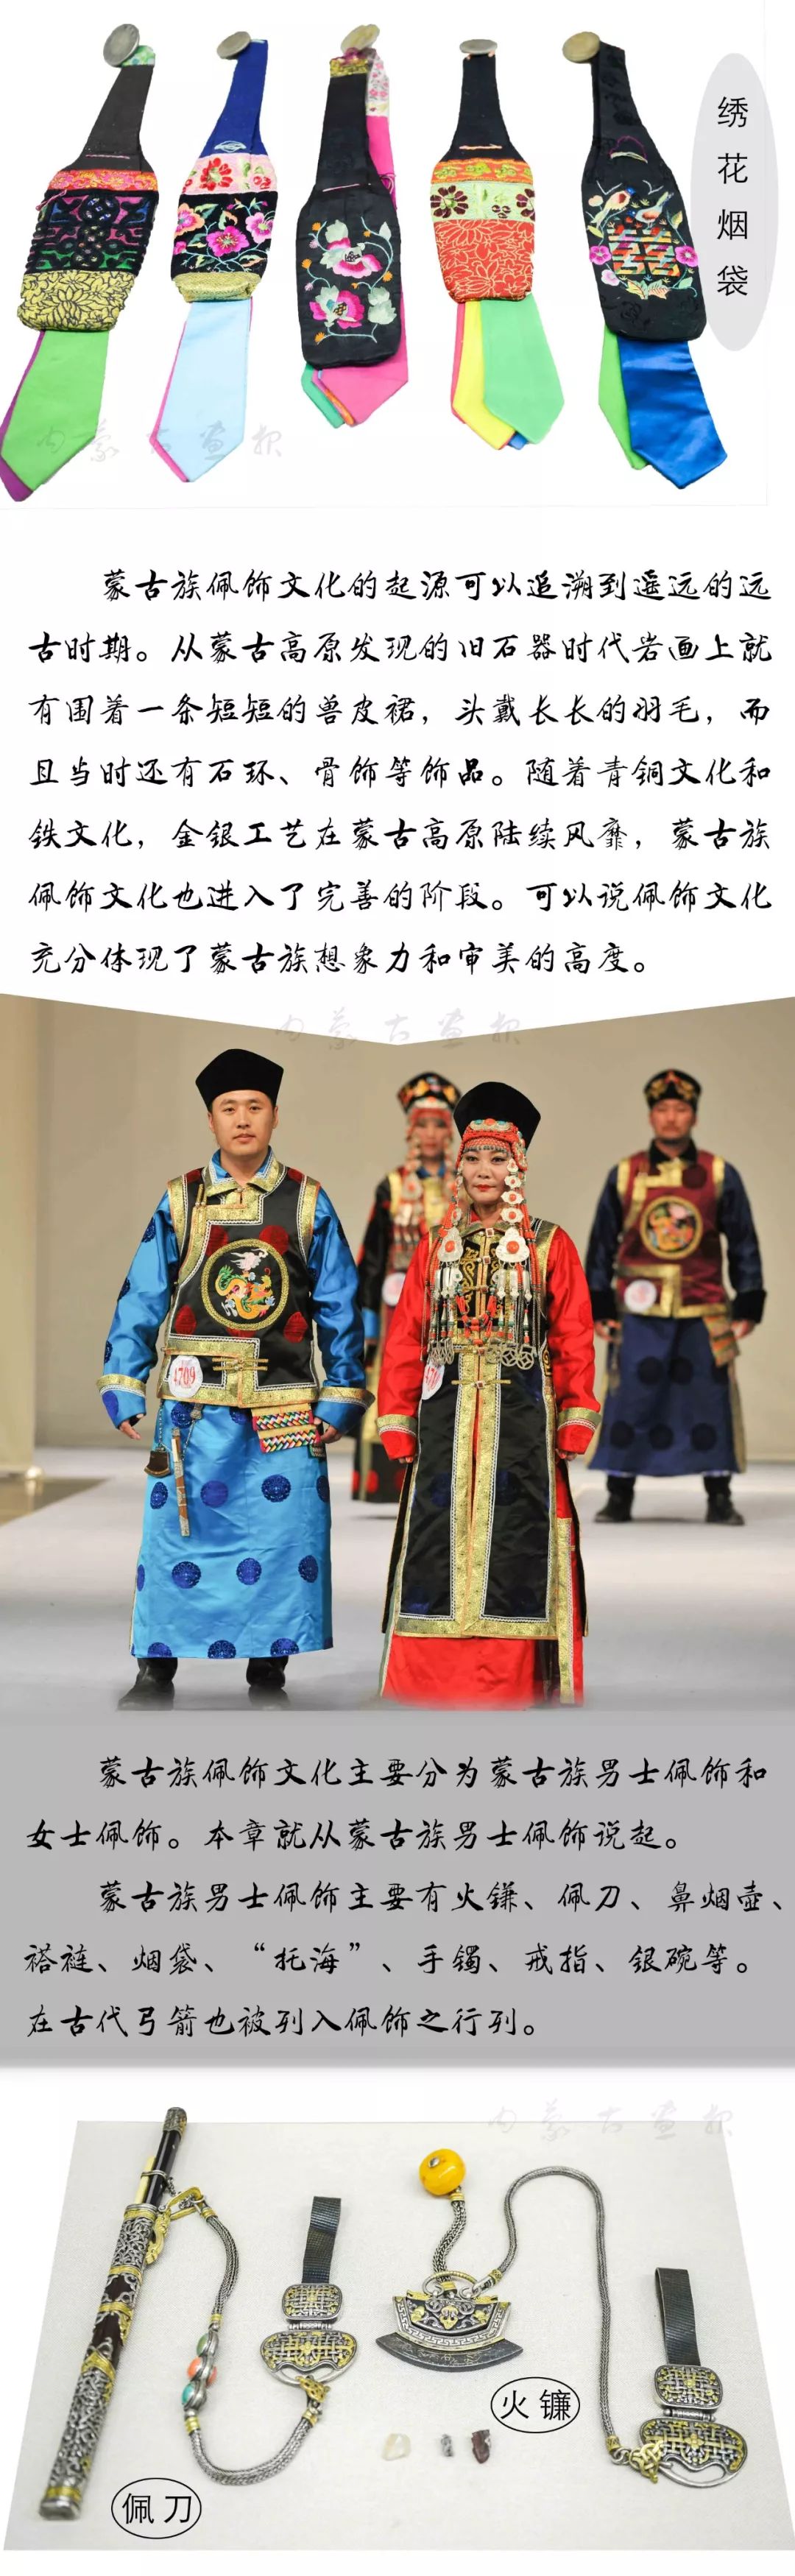 装点世界的蒙古族传统佩饰 | 男士篇 第9张